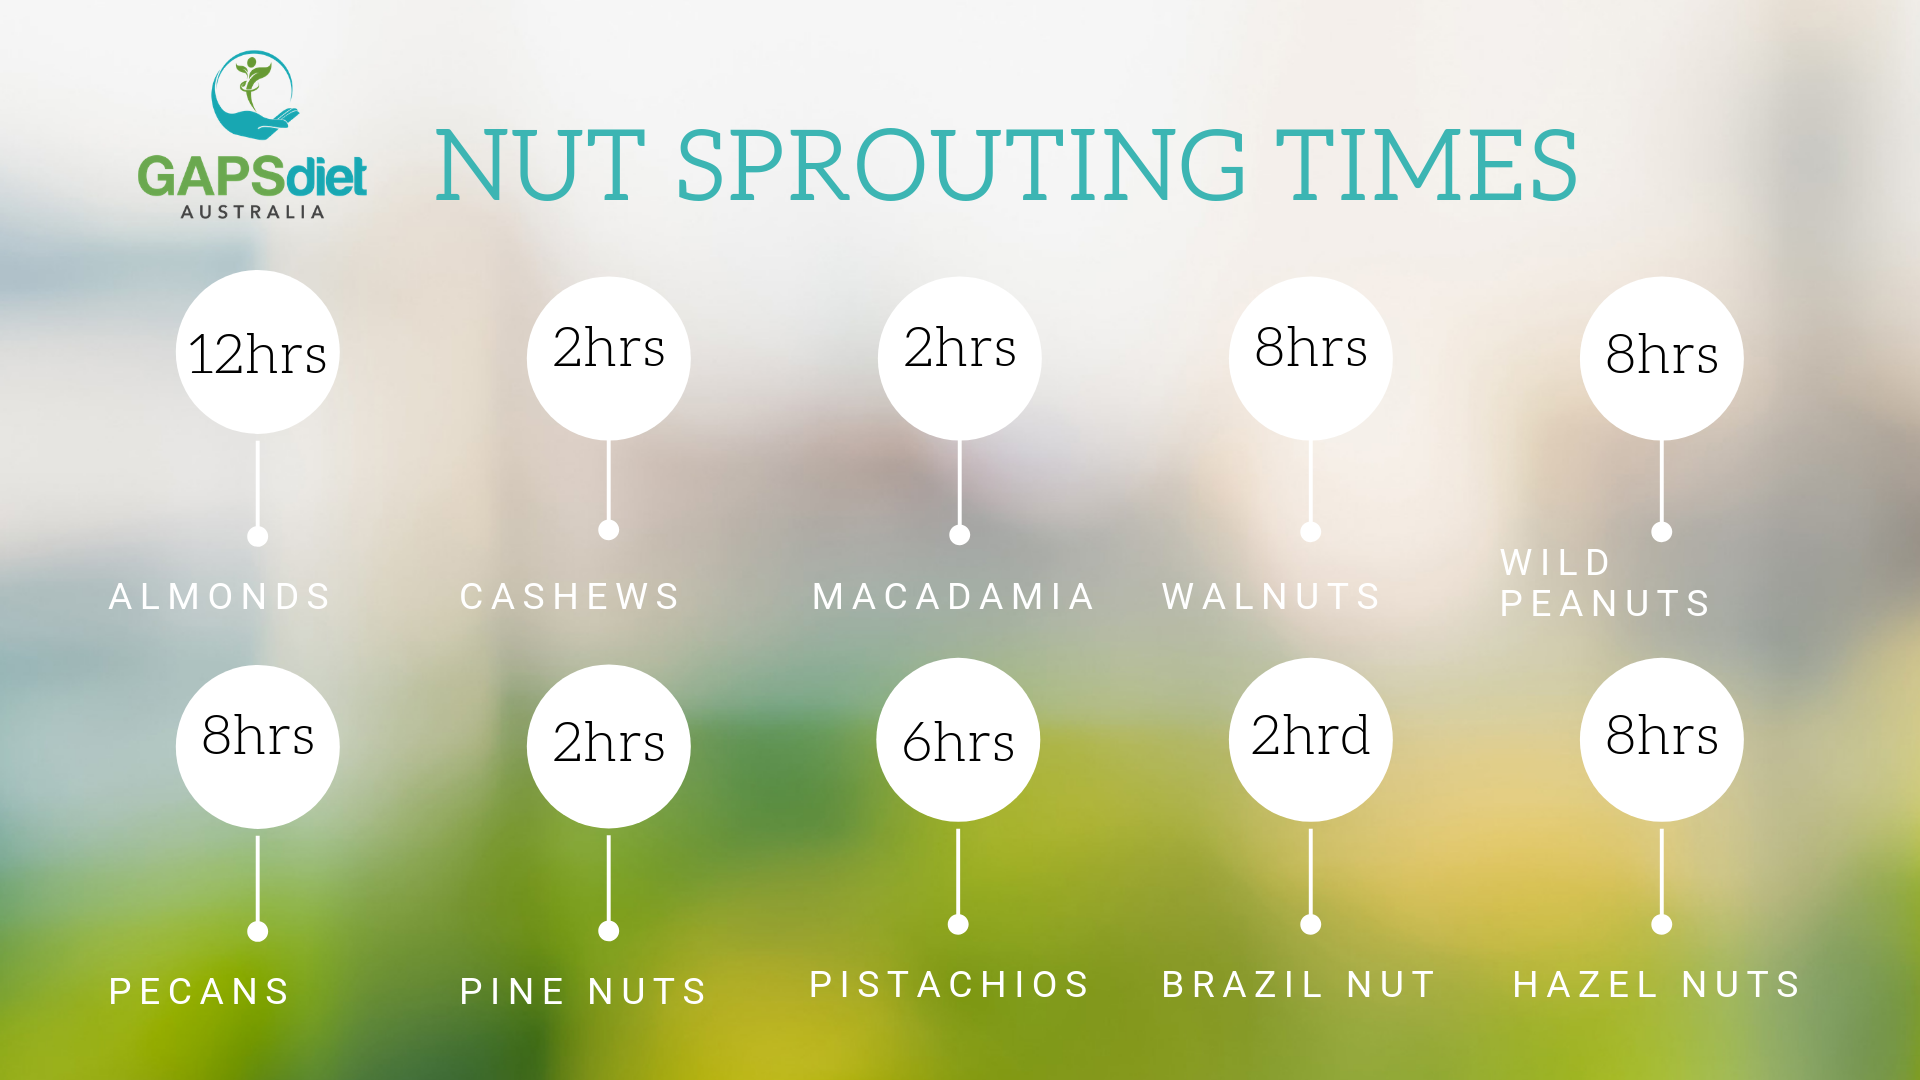 Soaking Nuts Chart